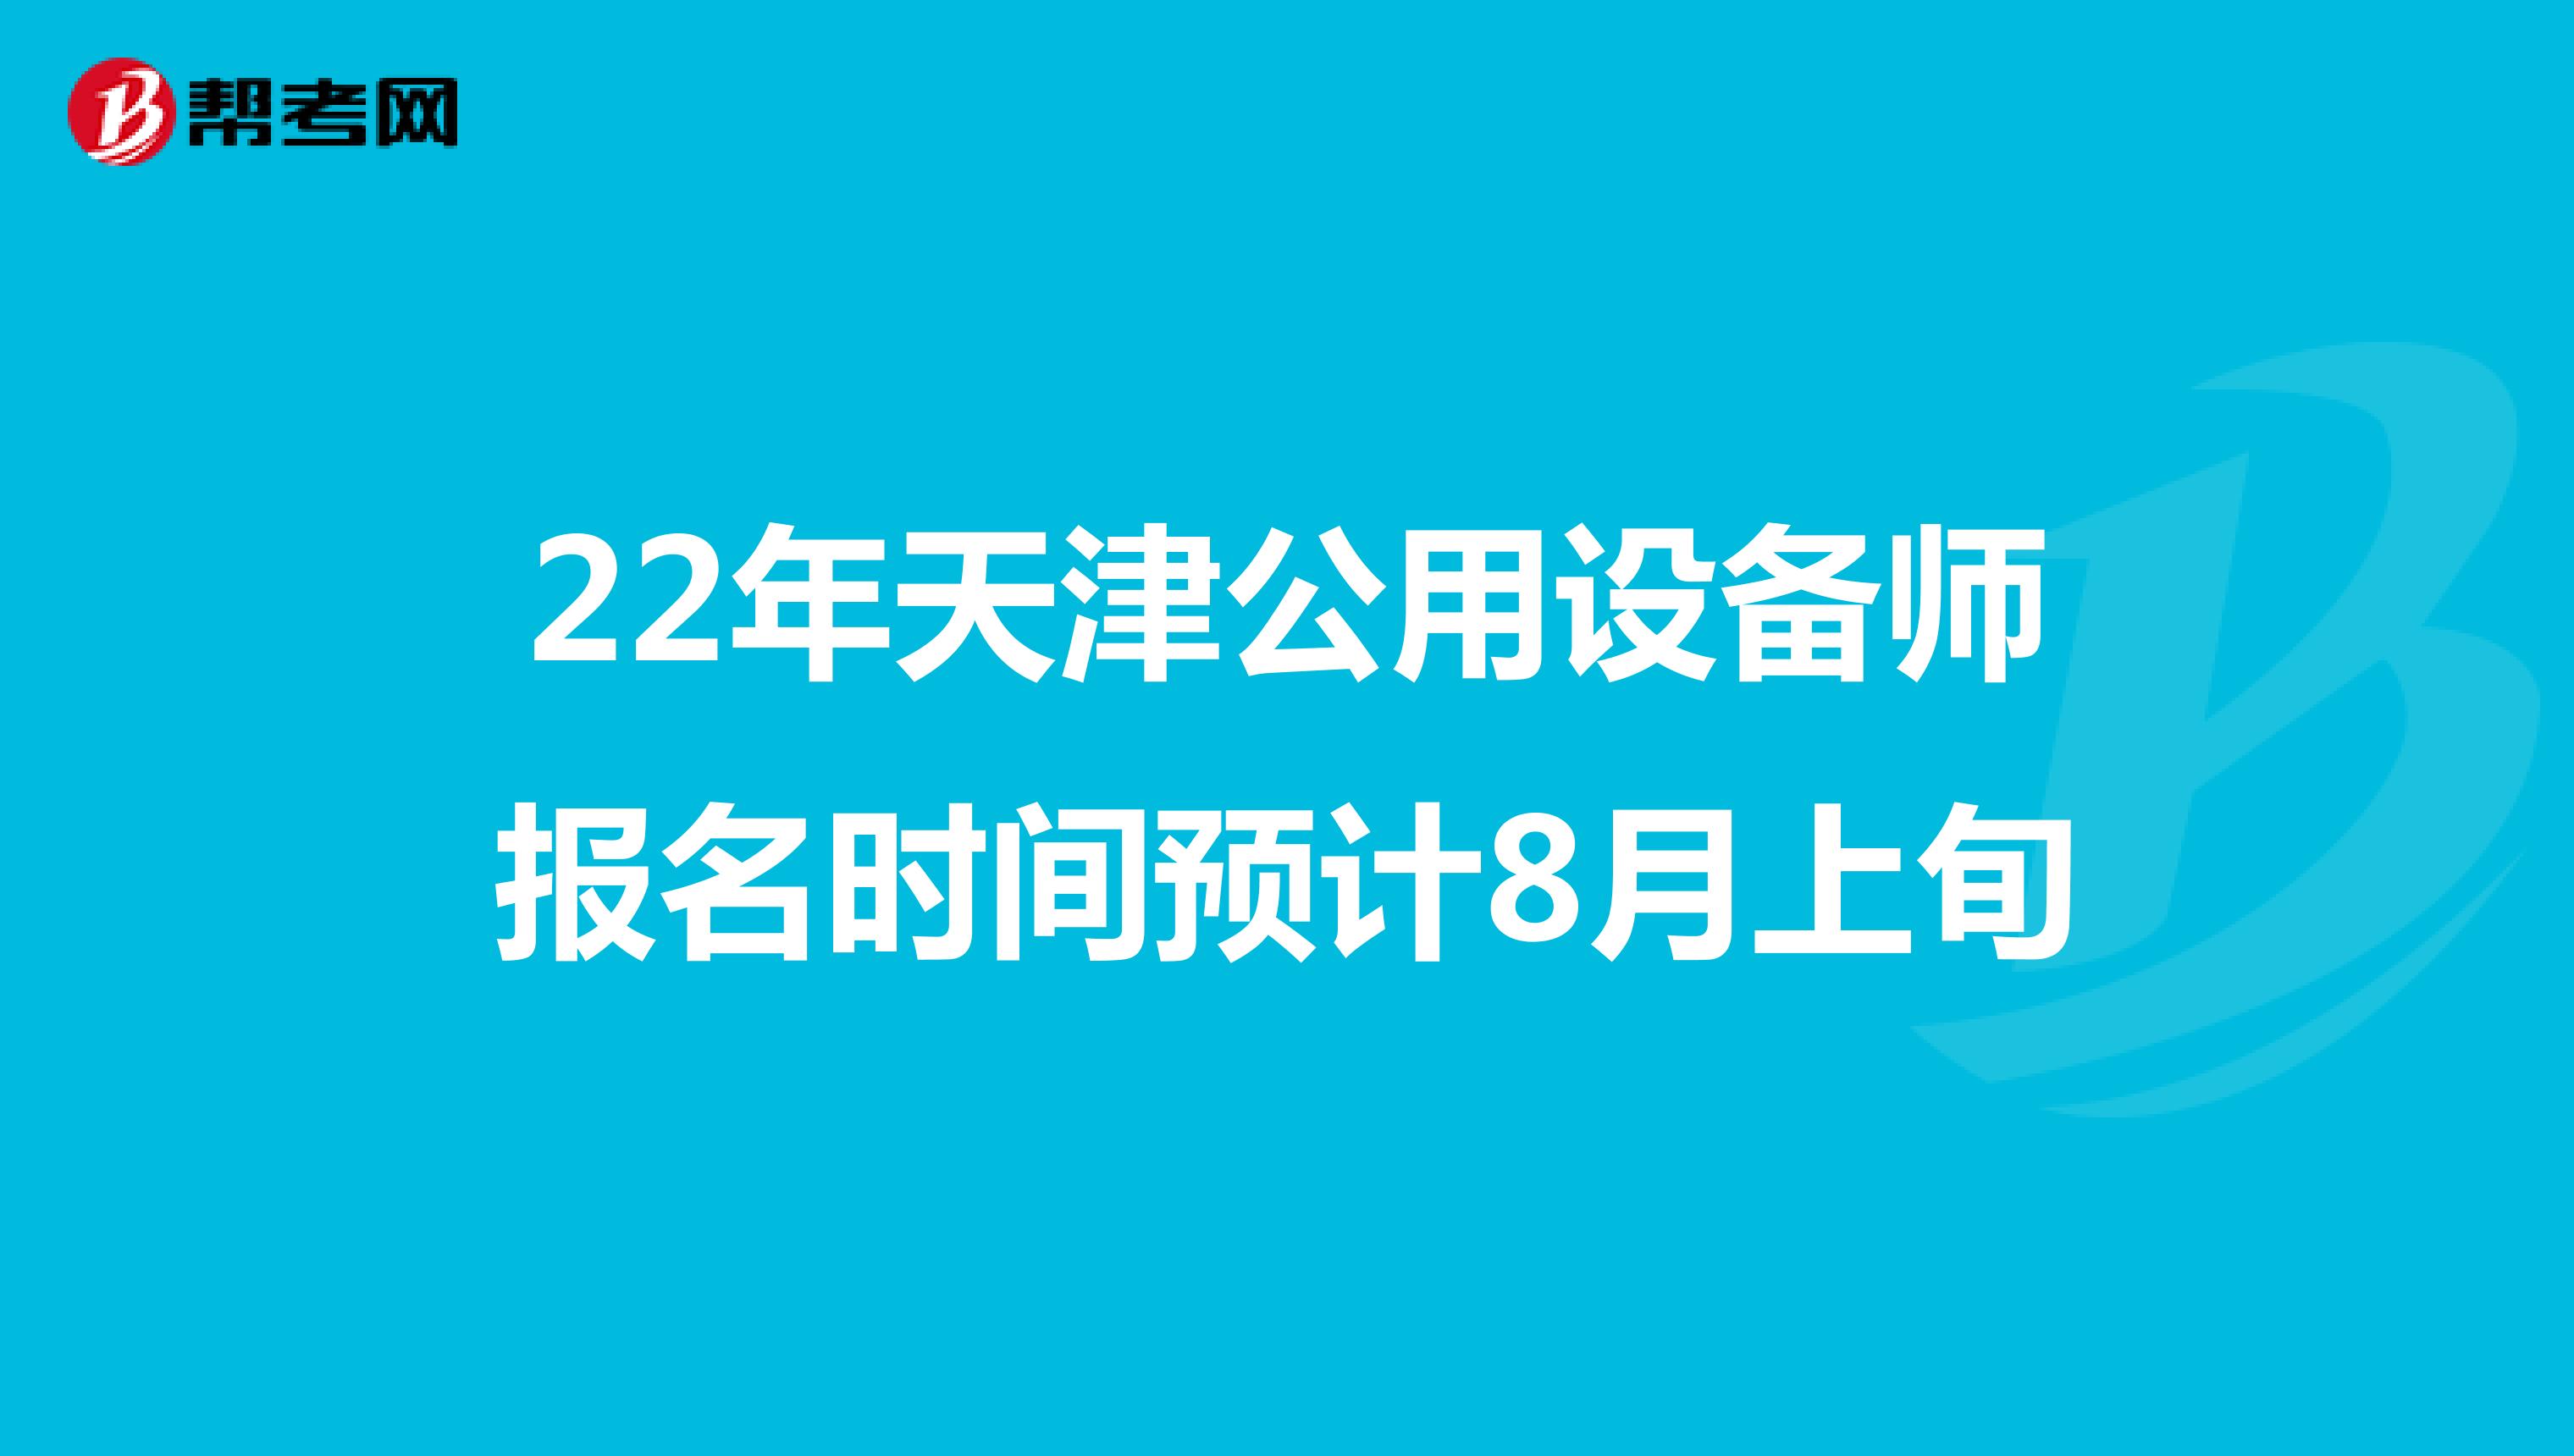 22年天津公用设备师报名时间预计8月上旬